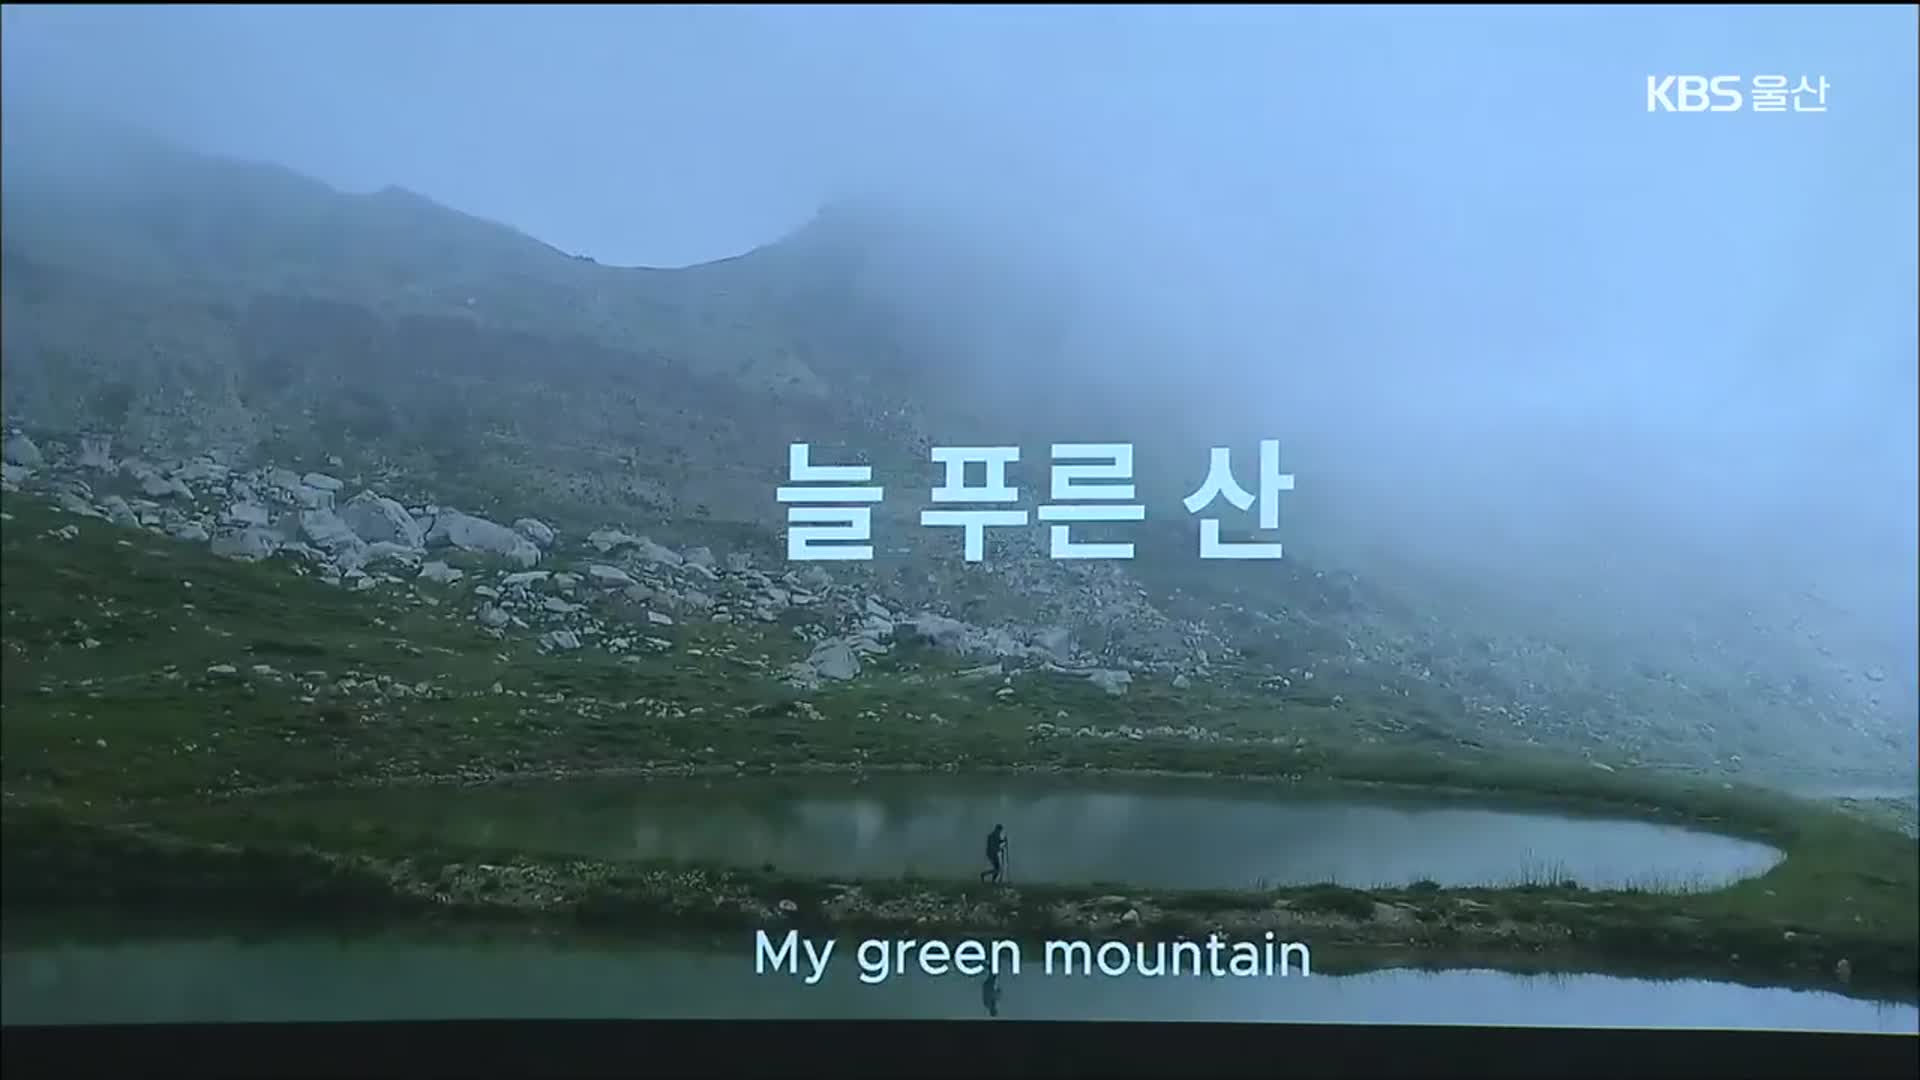 제6회 울주산악영화제 개막…“늘 푸른 산”